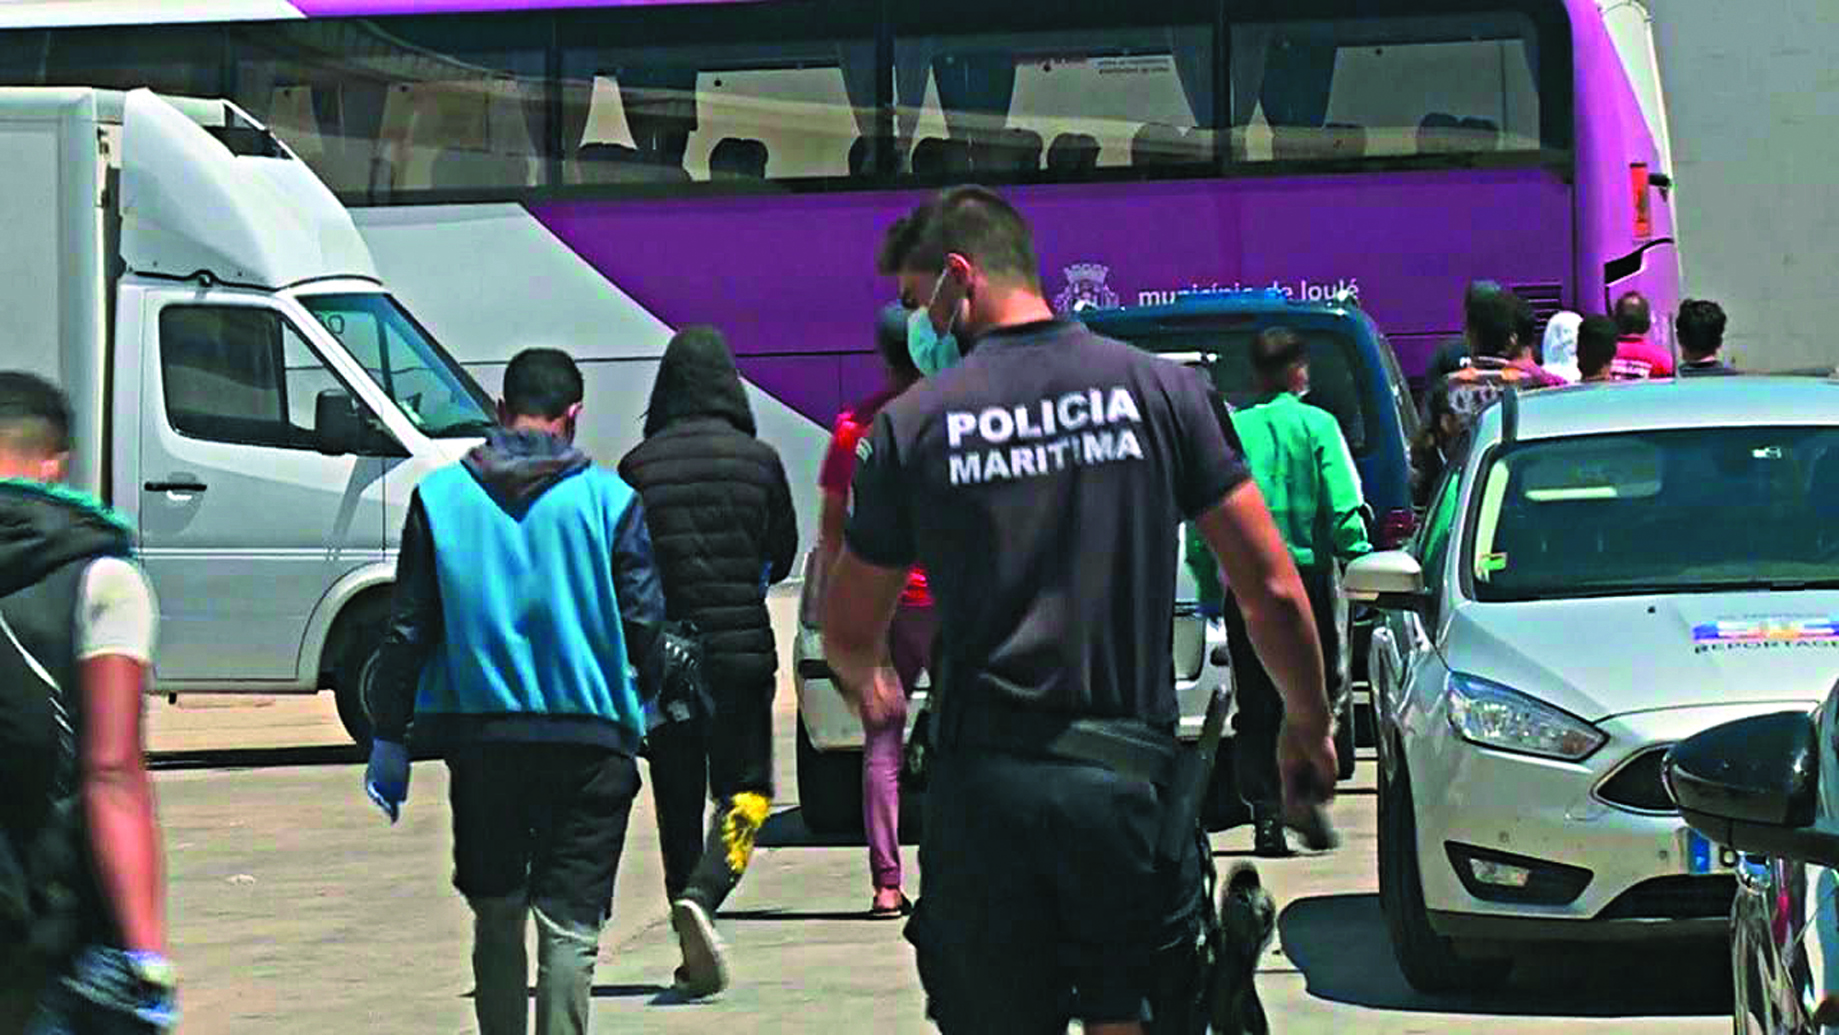 Migrantes detidos após motim no Porto